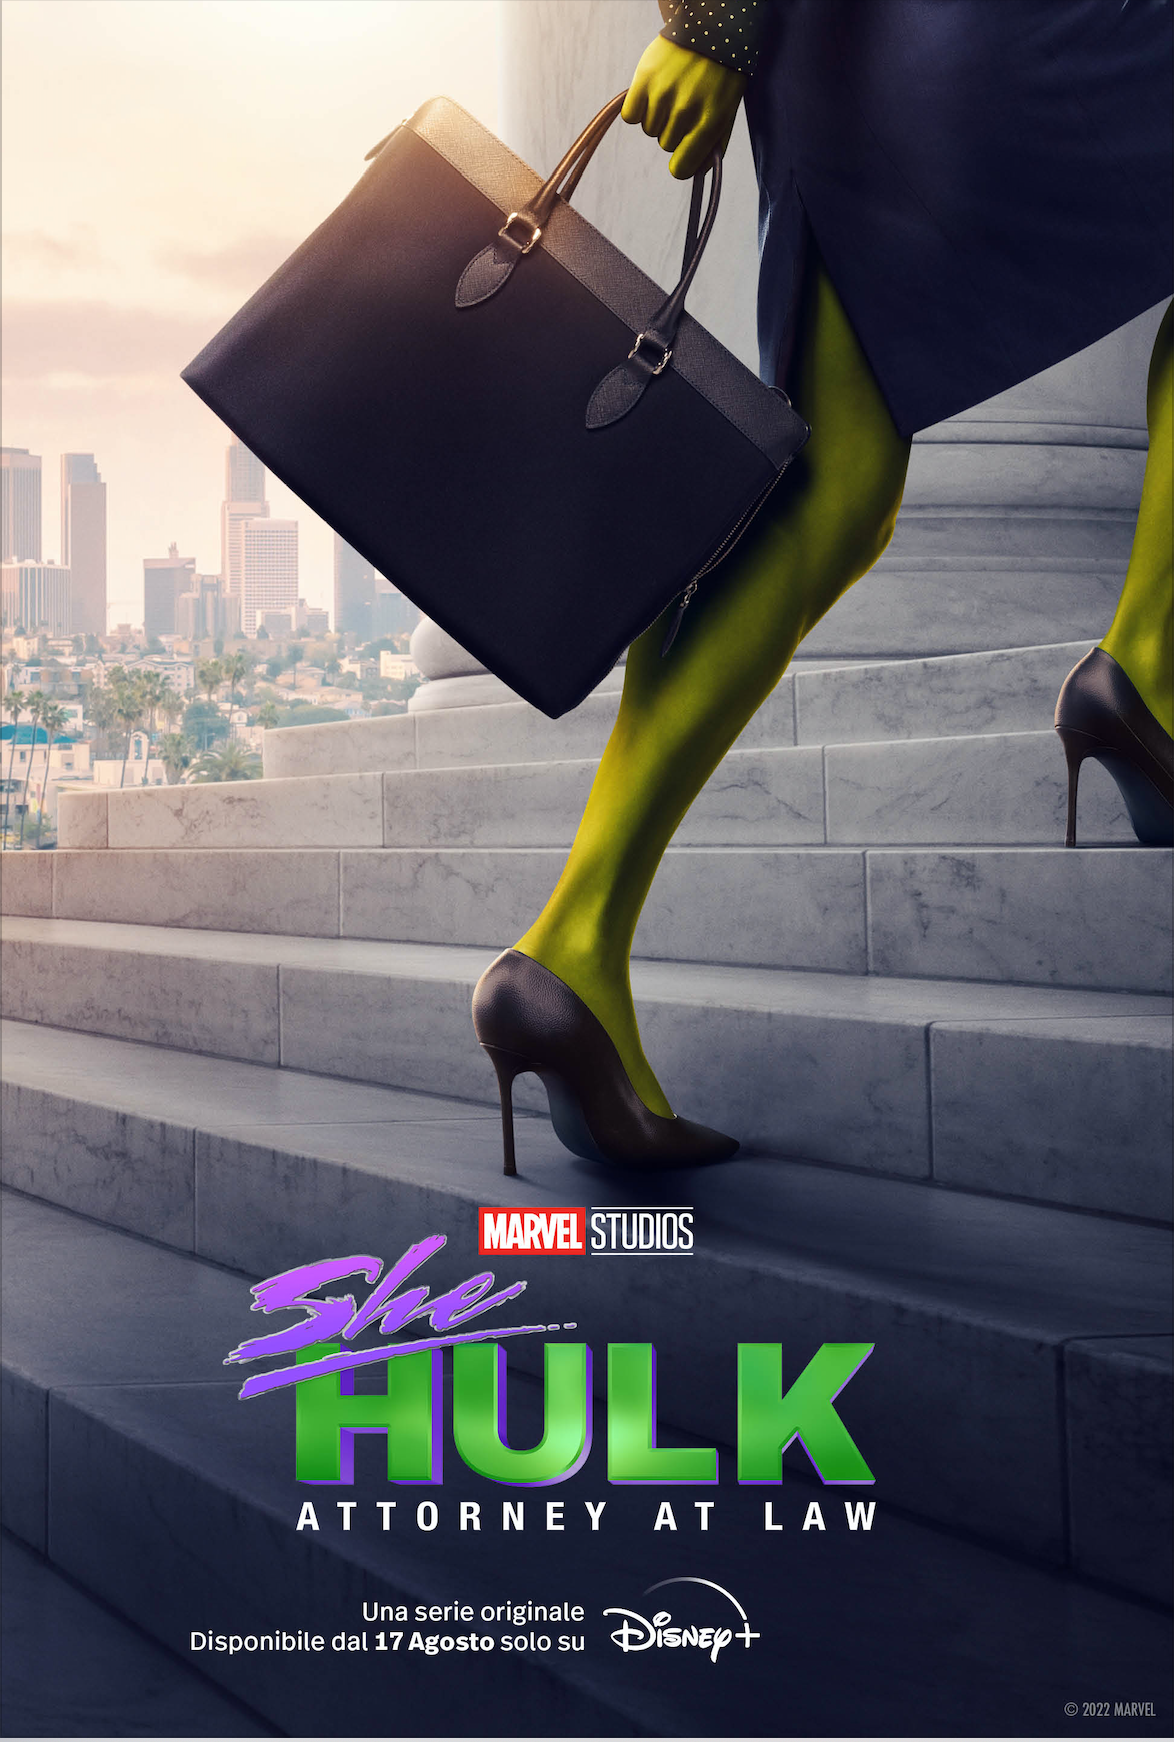 Il poster promozionale di She Hulk per Disney+